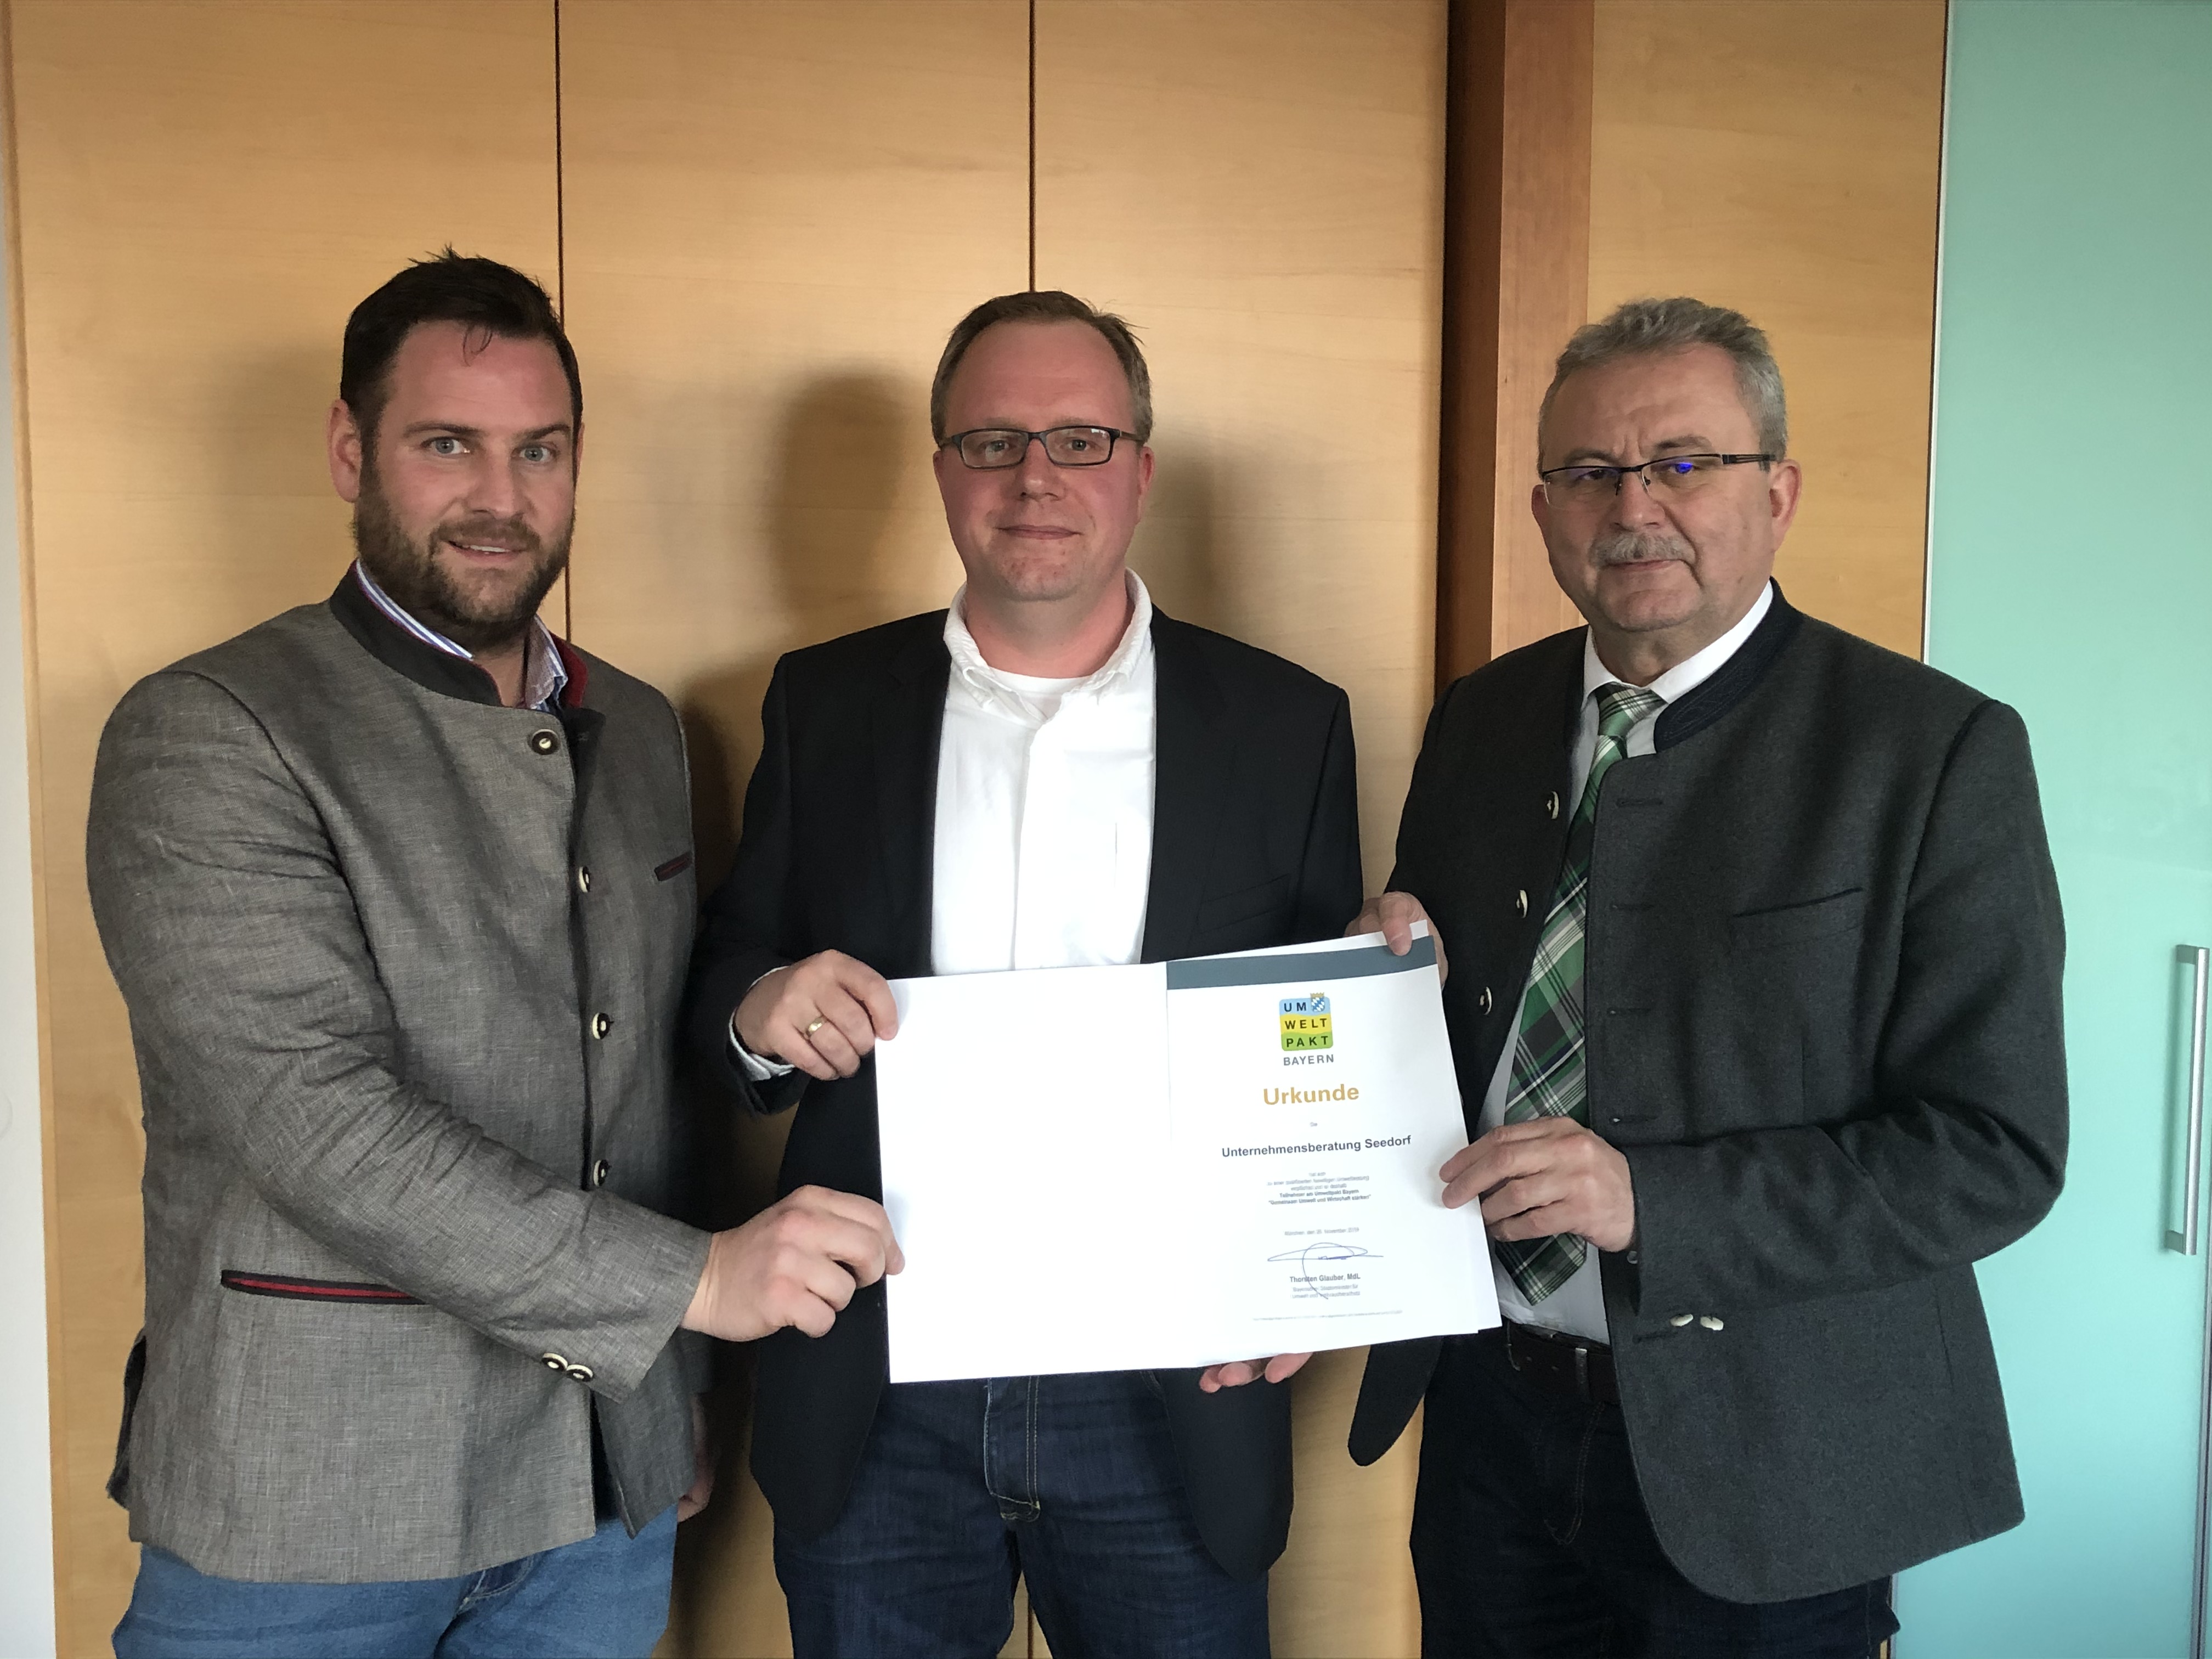 Firma Unternehmensberatung Seedorf im Rahmen des Umweltpakt Bayern ausgezeichnet